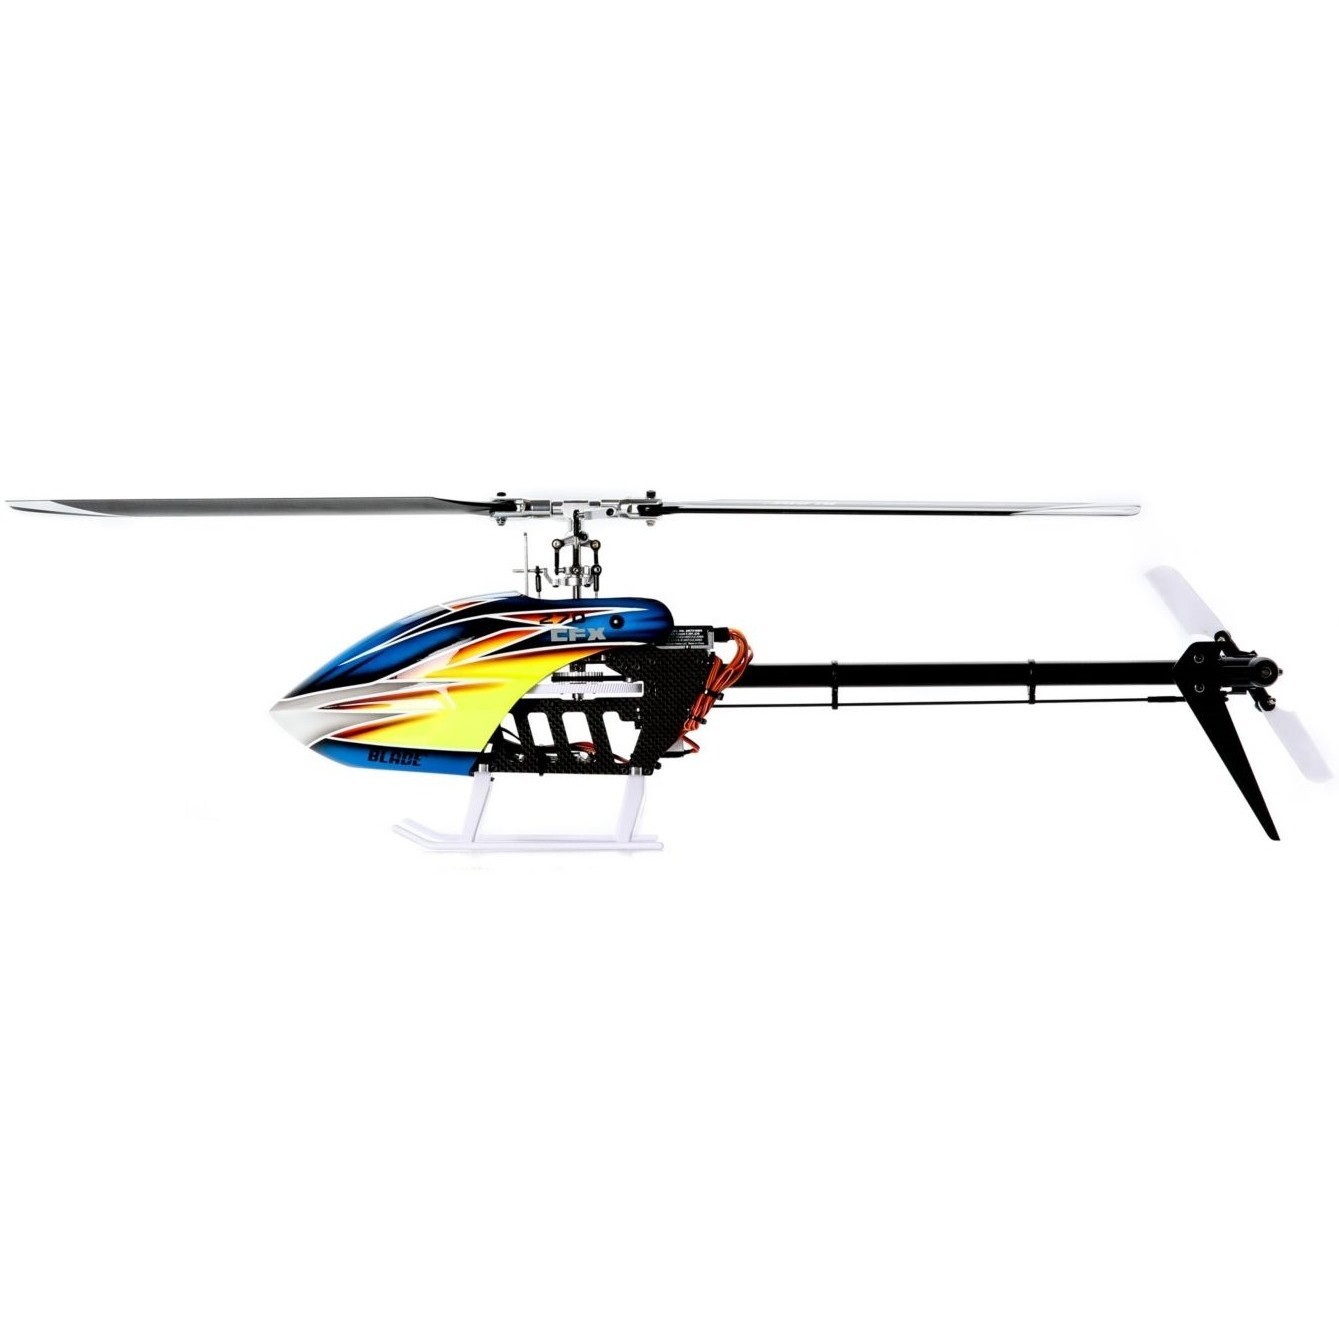 Компания Blade представляет радиоуправляемый вертолет Blade 270 CFX BNF. 